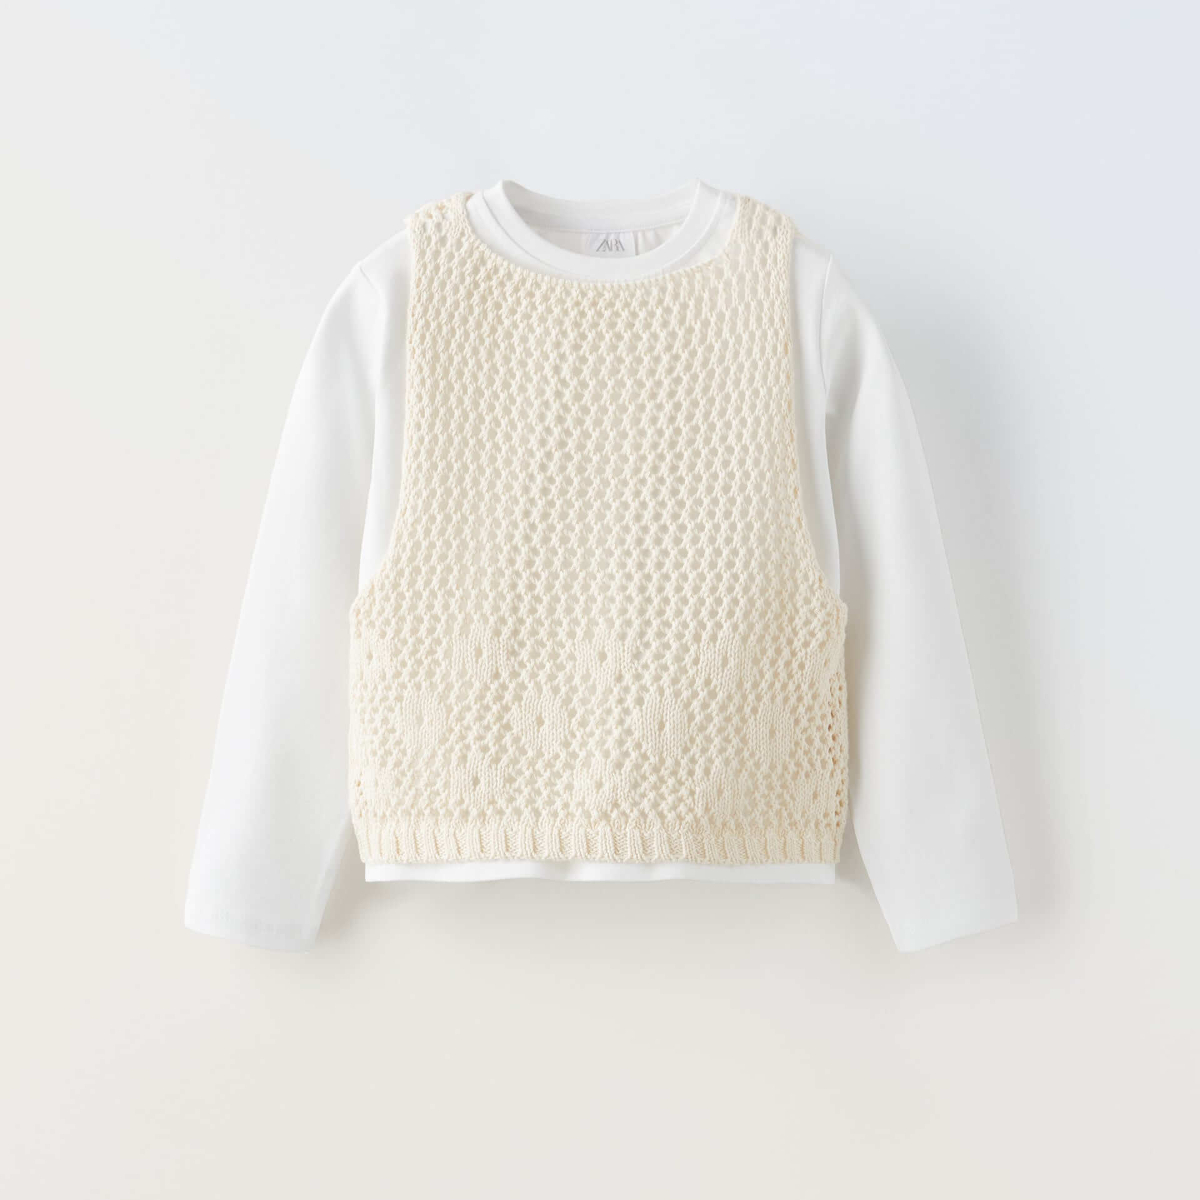 Комплект лонгслив с жилетом Zara Knit, 2 предмета, белый / светло-бежевый